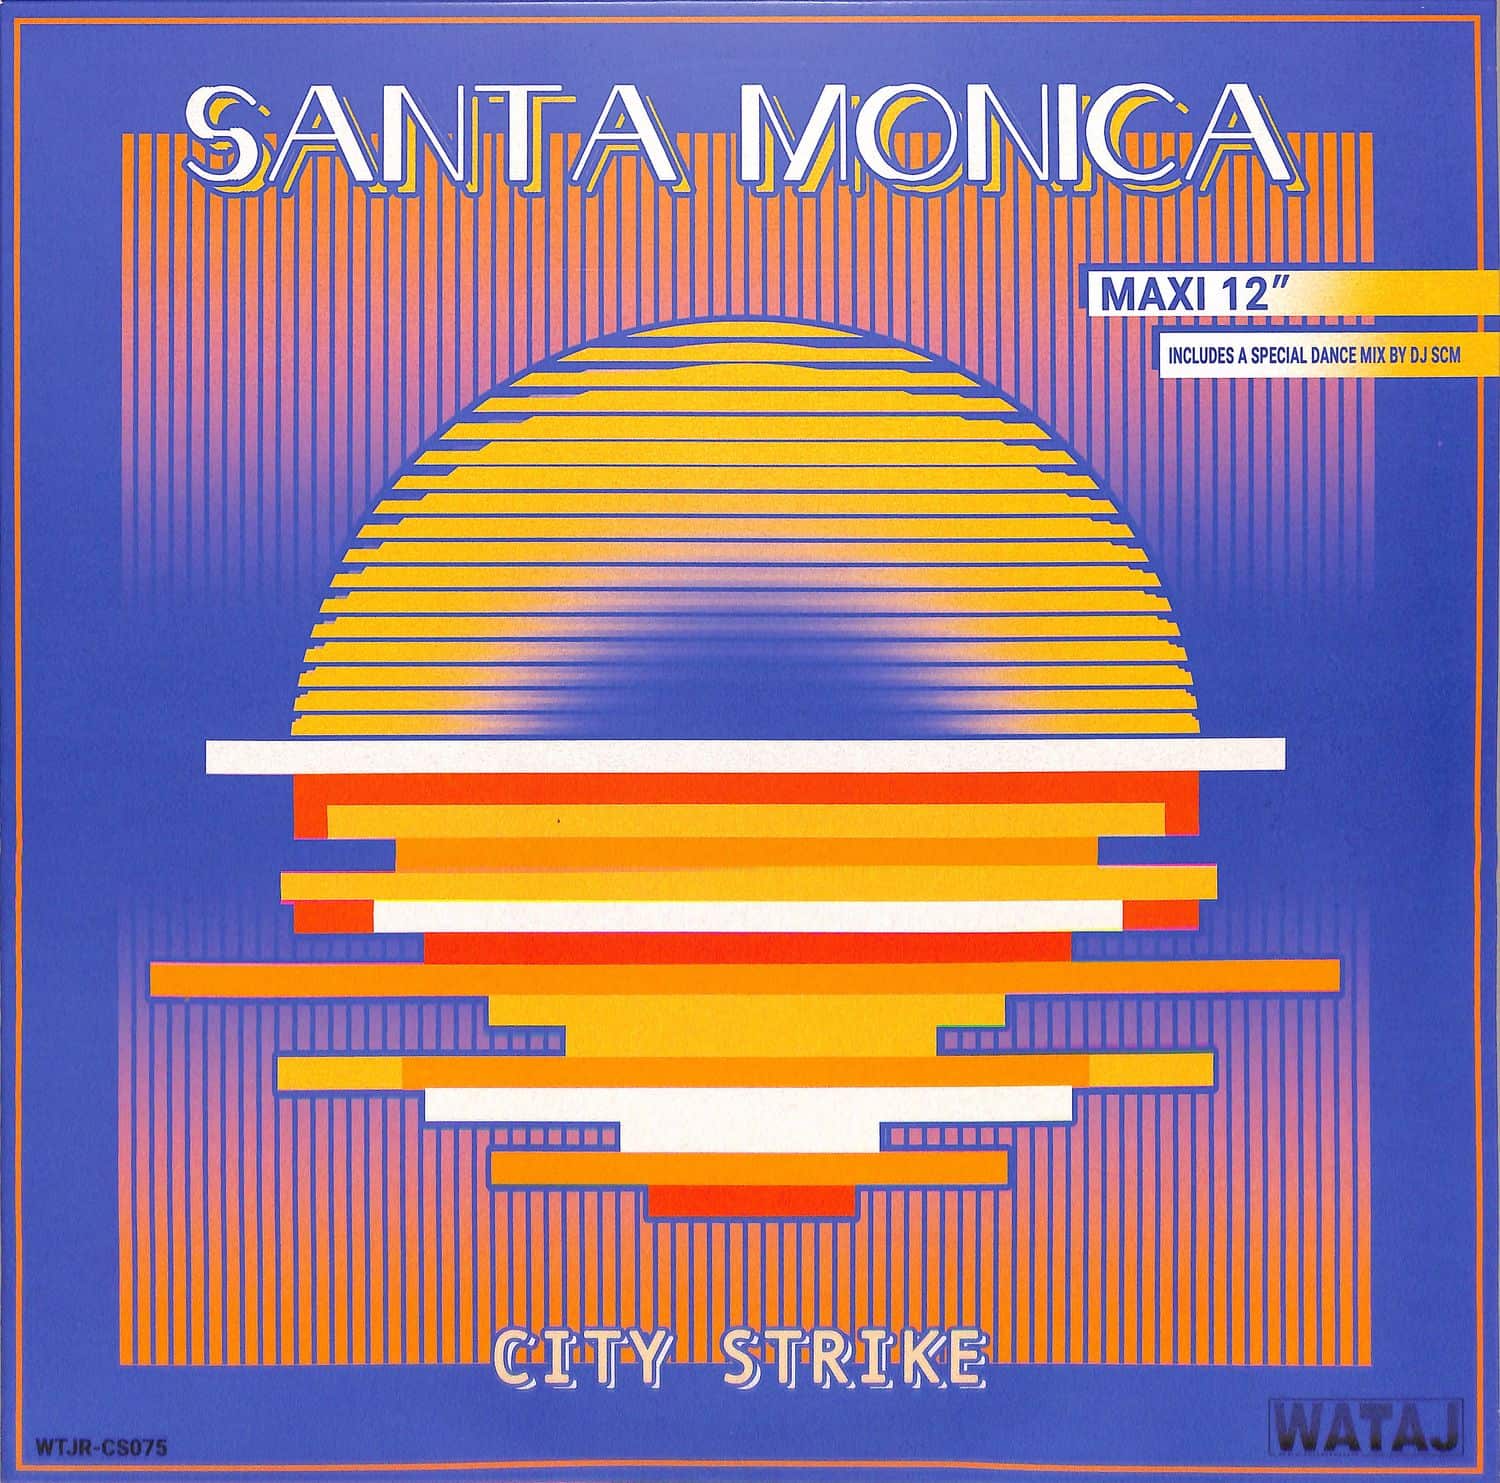 City Strike - SANTA MONICA